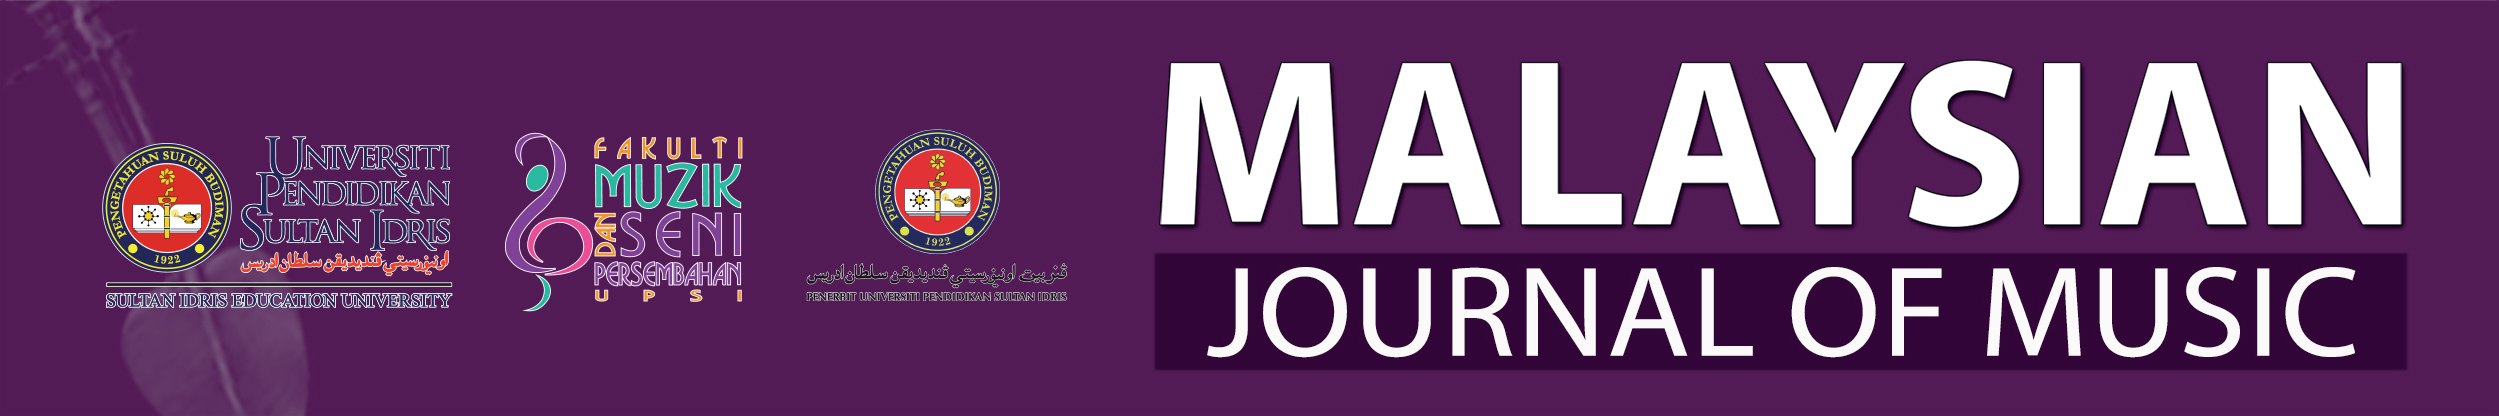 Malaysian Journal of Music, MJM